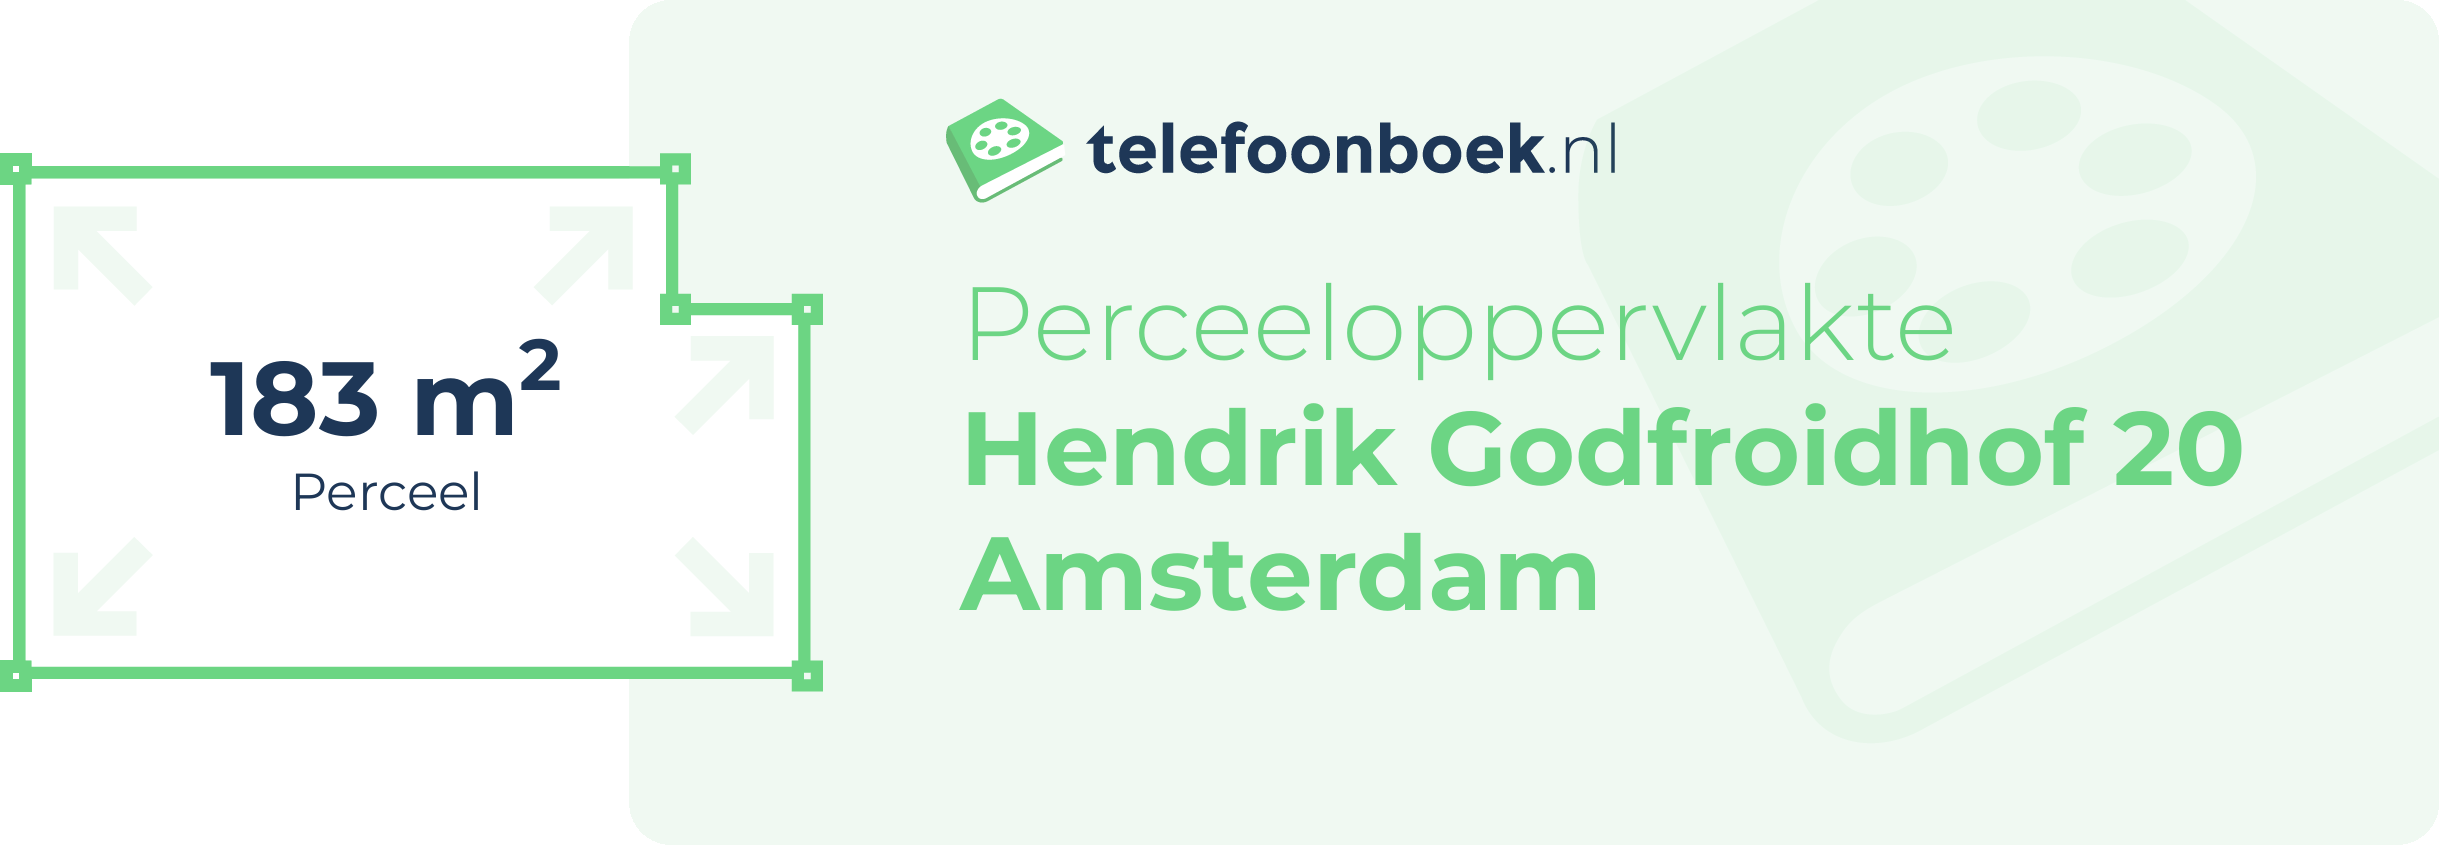 Perceeloppervlakte Hendrik Godfroidhof 20 Amsterdam